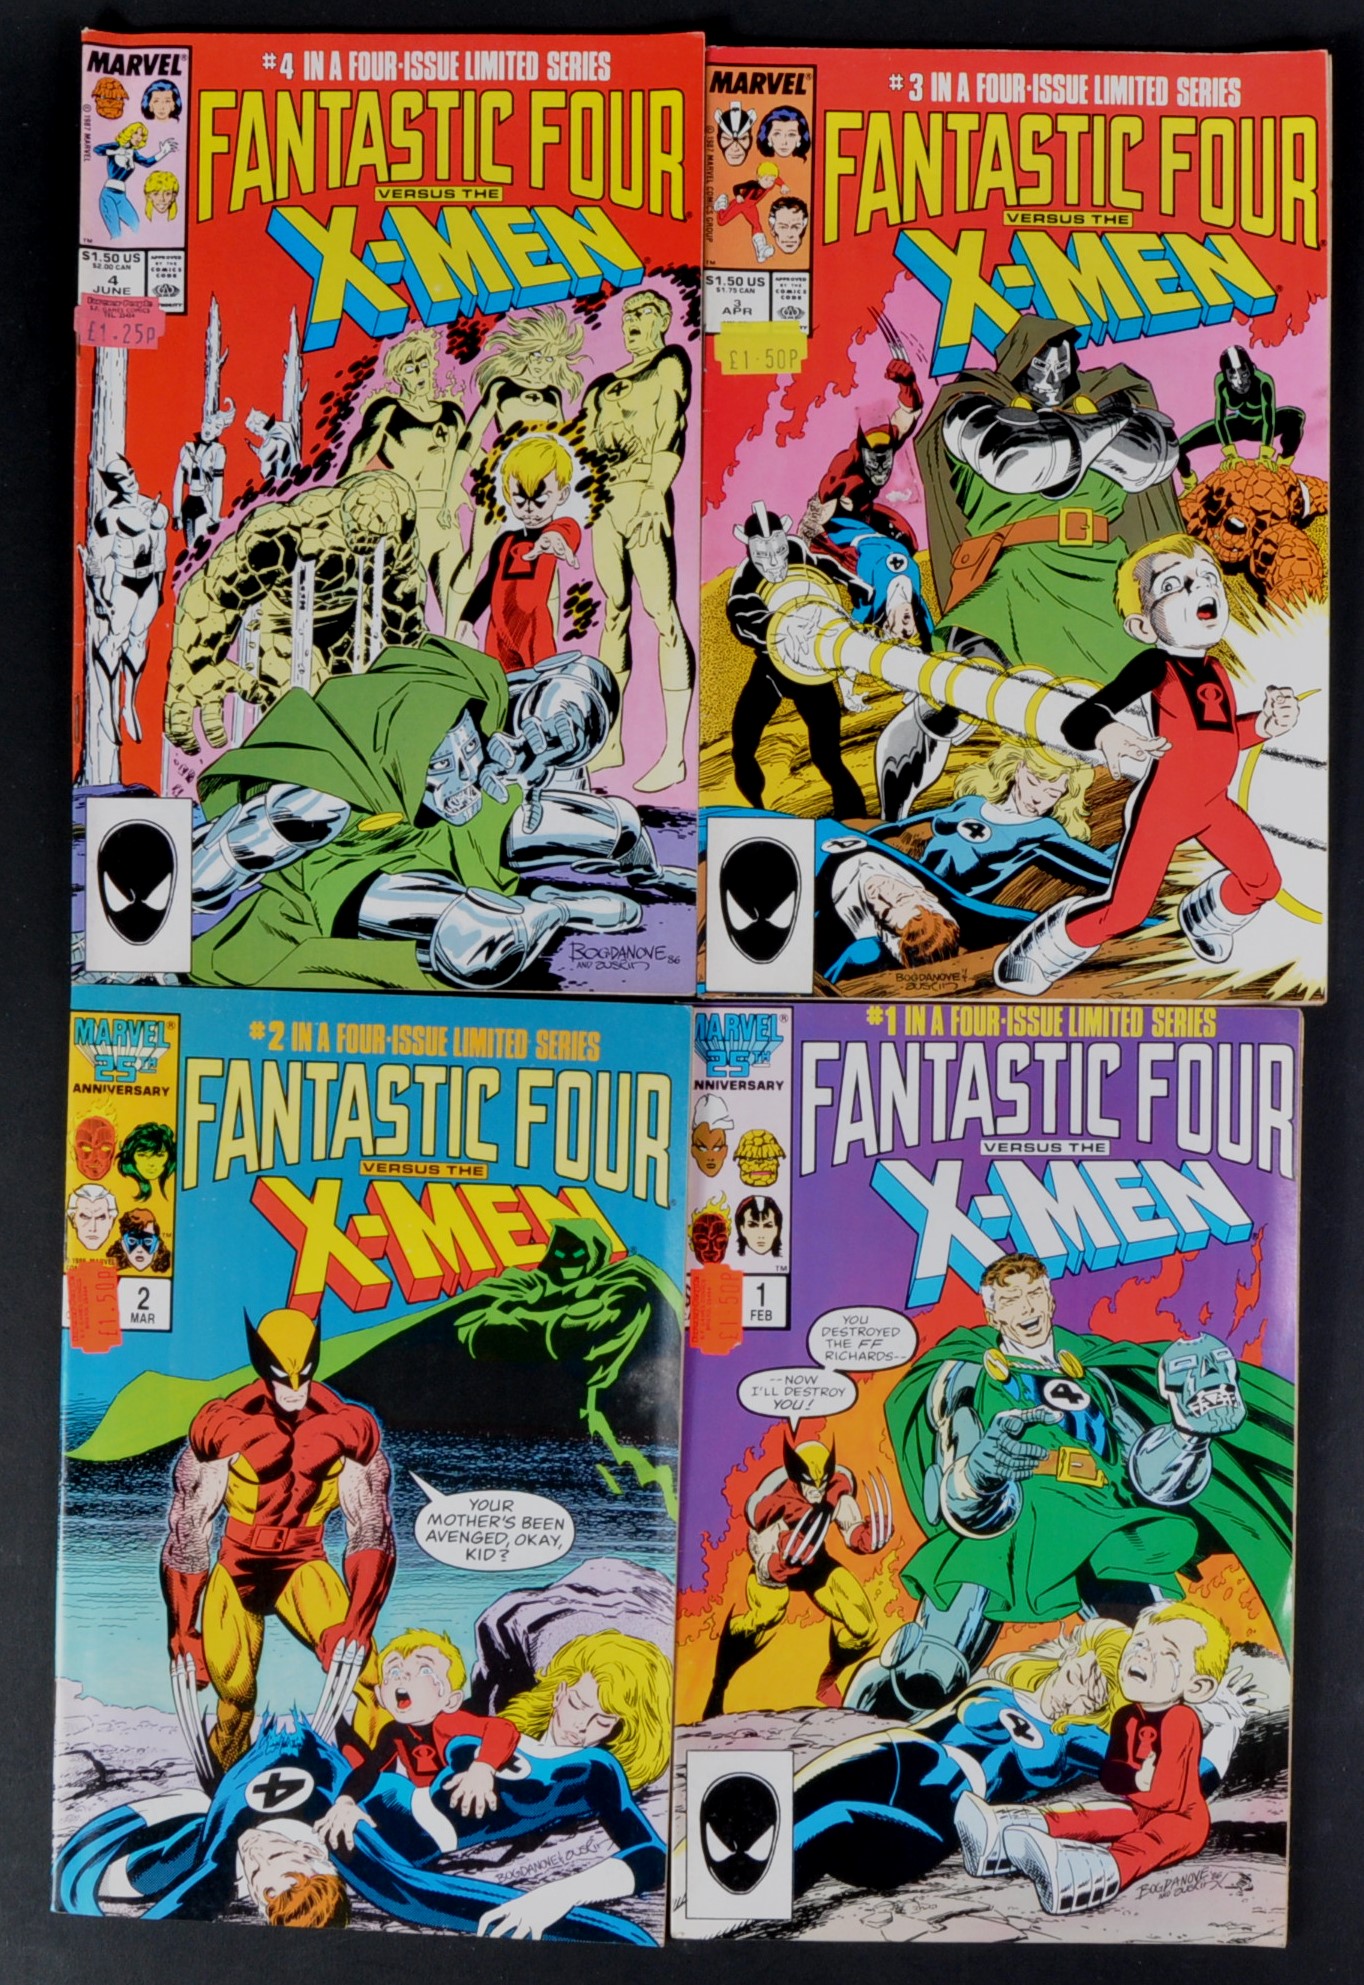 MARVEL COMICS - FANTASTIC FOUR VS X-MEN - #1 TO #4 COMIC BOOK